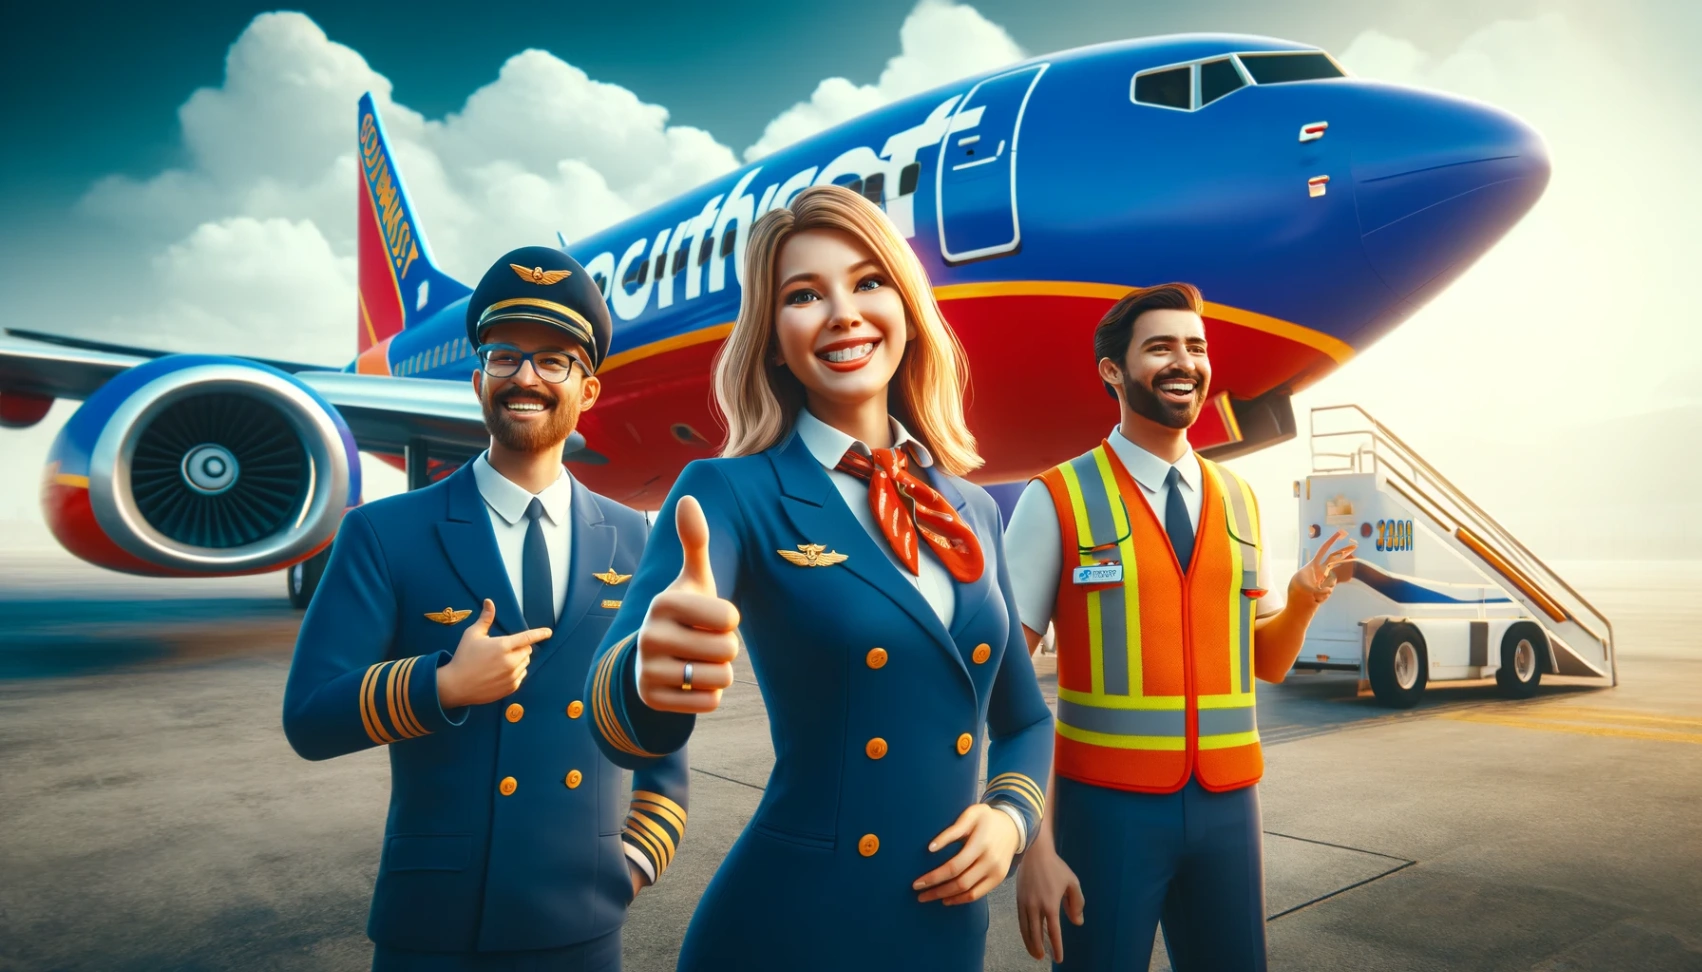 Stellenangebote bei Southwest Airlines: Erfahren Sie, wie Sie sich bewerben können